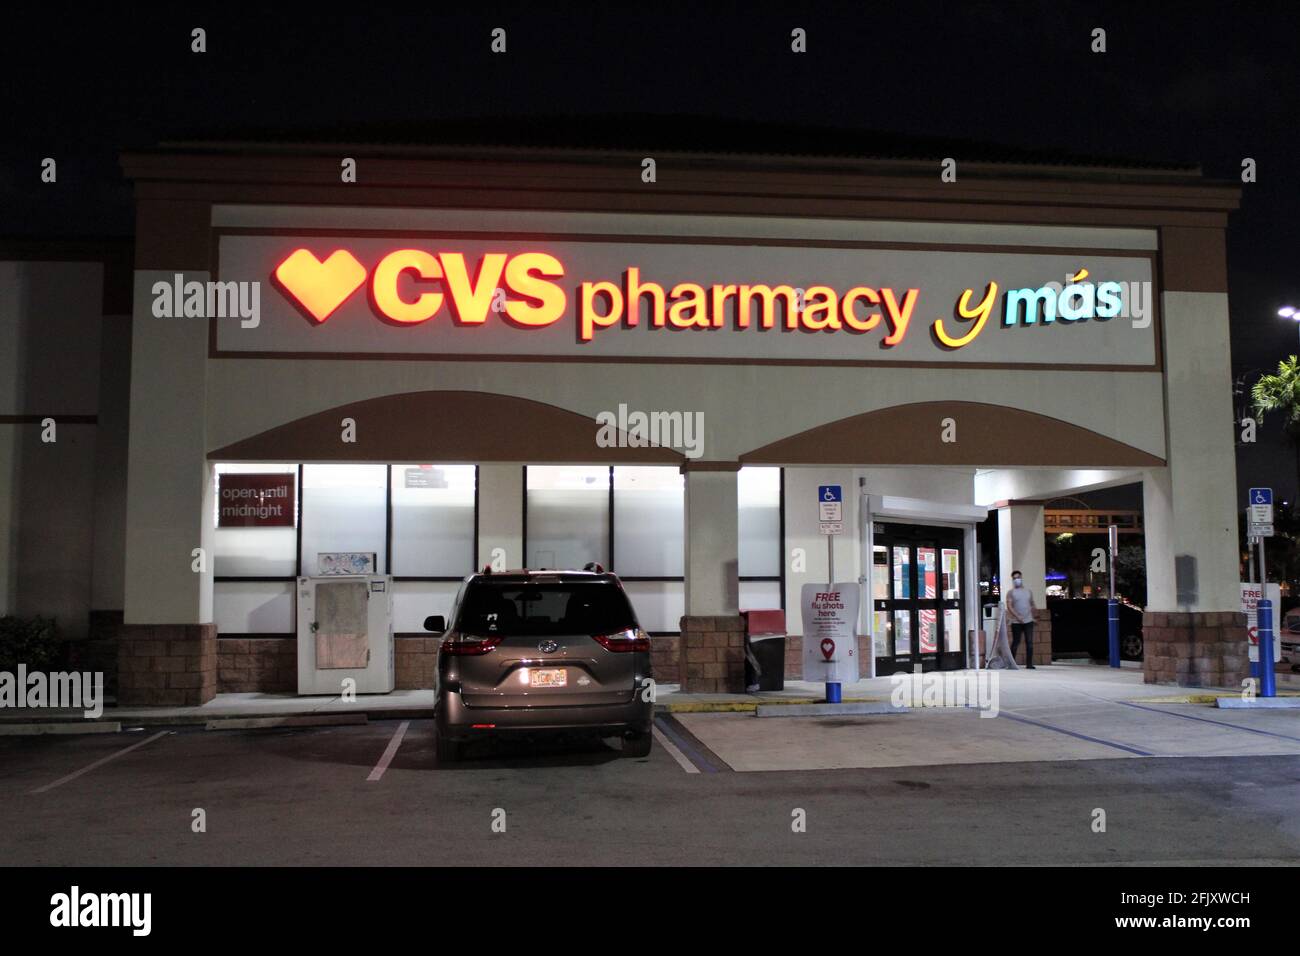 Nachtaufnahme des Eingangs eines CVS, das auch Spanisch in seine Schilder integriert hat. CVS y Mas. Ort, an dem COVID-19-Impfstoffe verabreicht werden Stockfoto